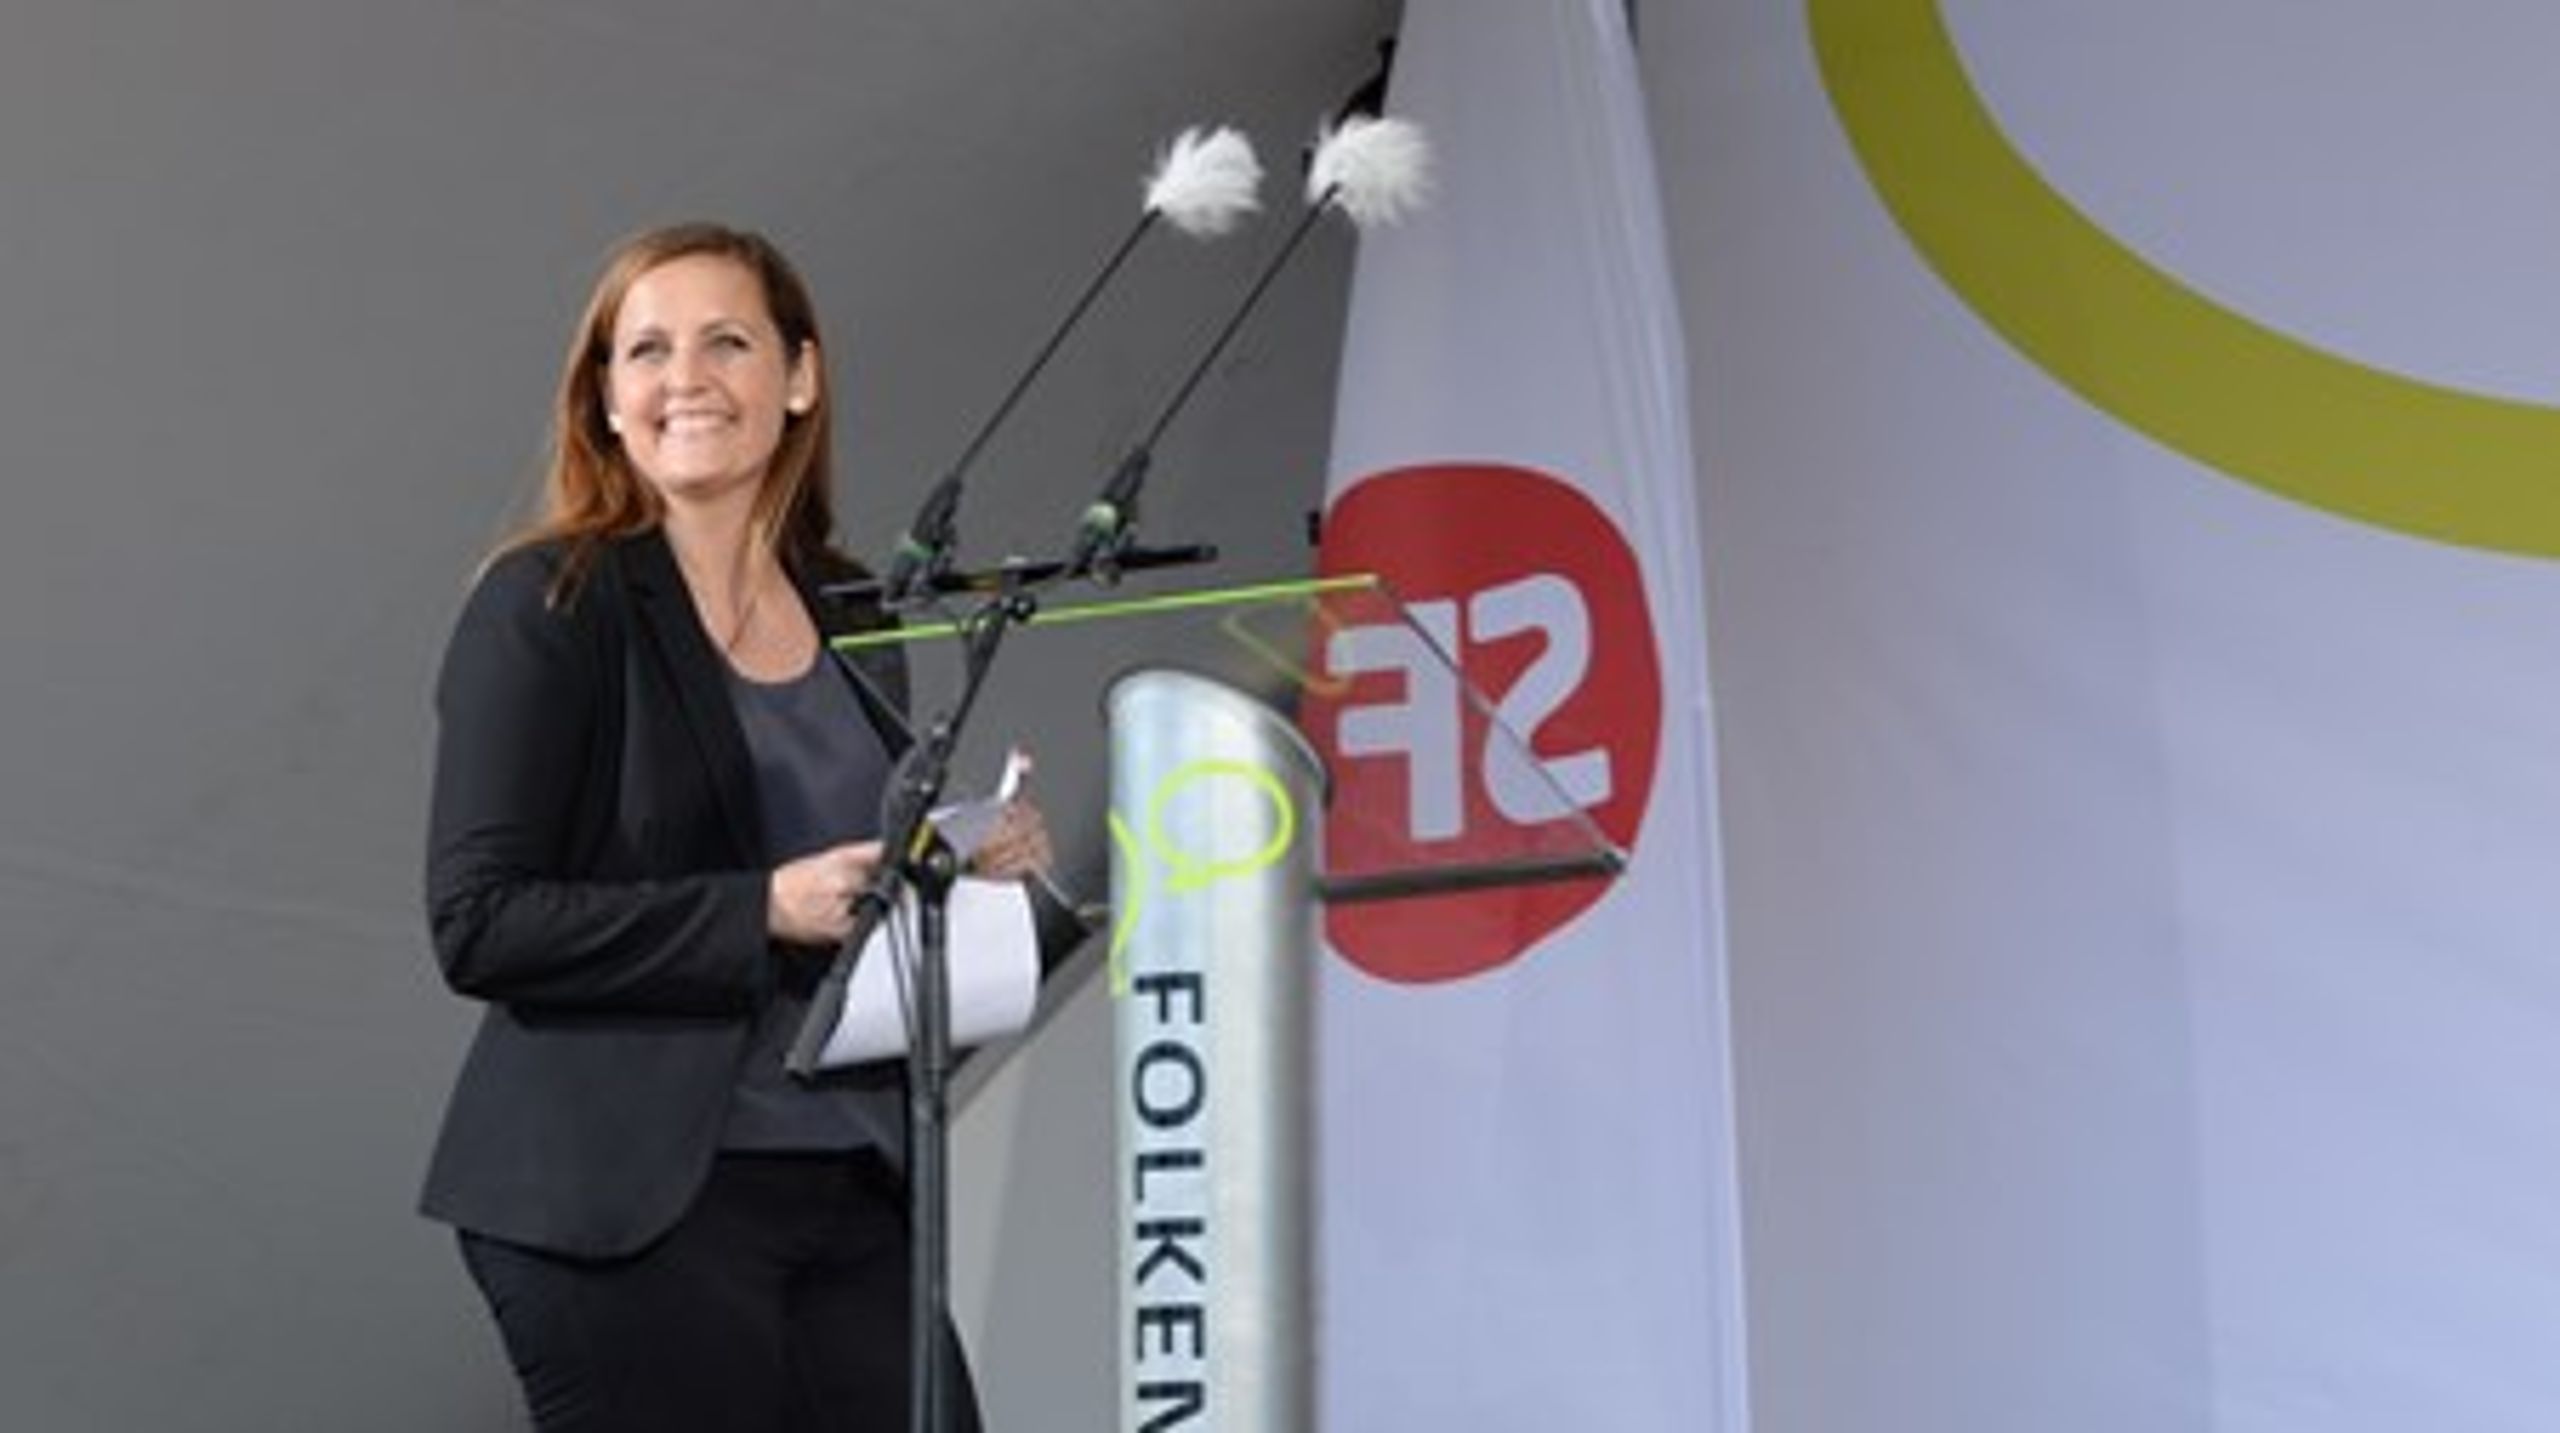 Pia Olsen Dyhr modtog dagens længste bifald efter sin tale på Folkemødet på Bornholm.